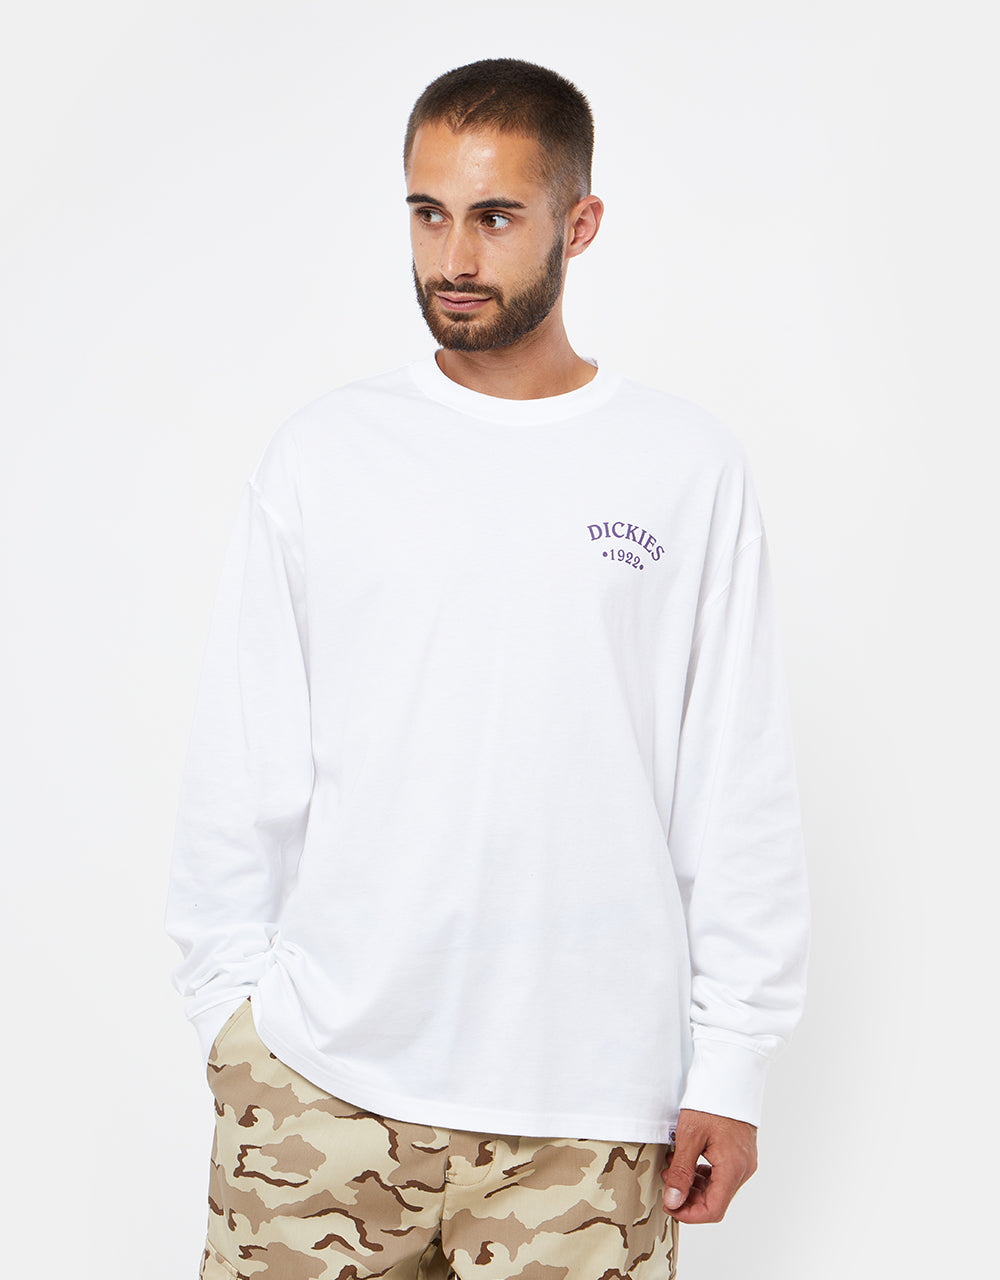 Dickies Garden Plain L/S T-Shirt - White